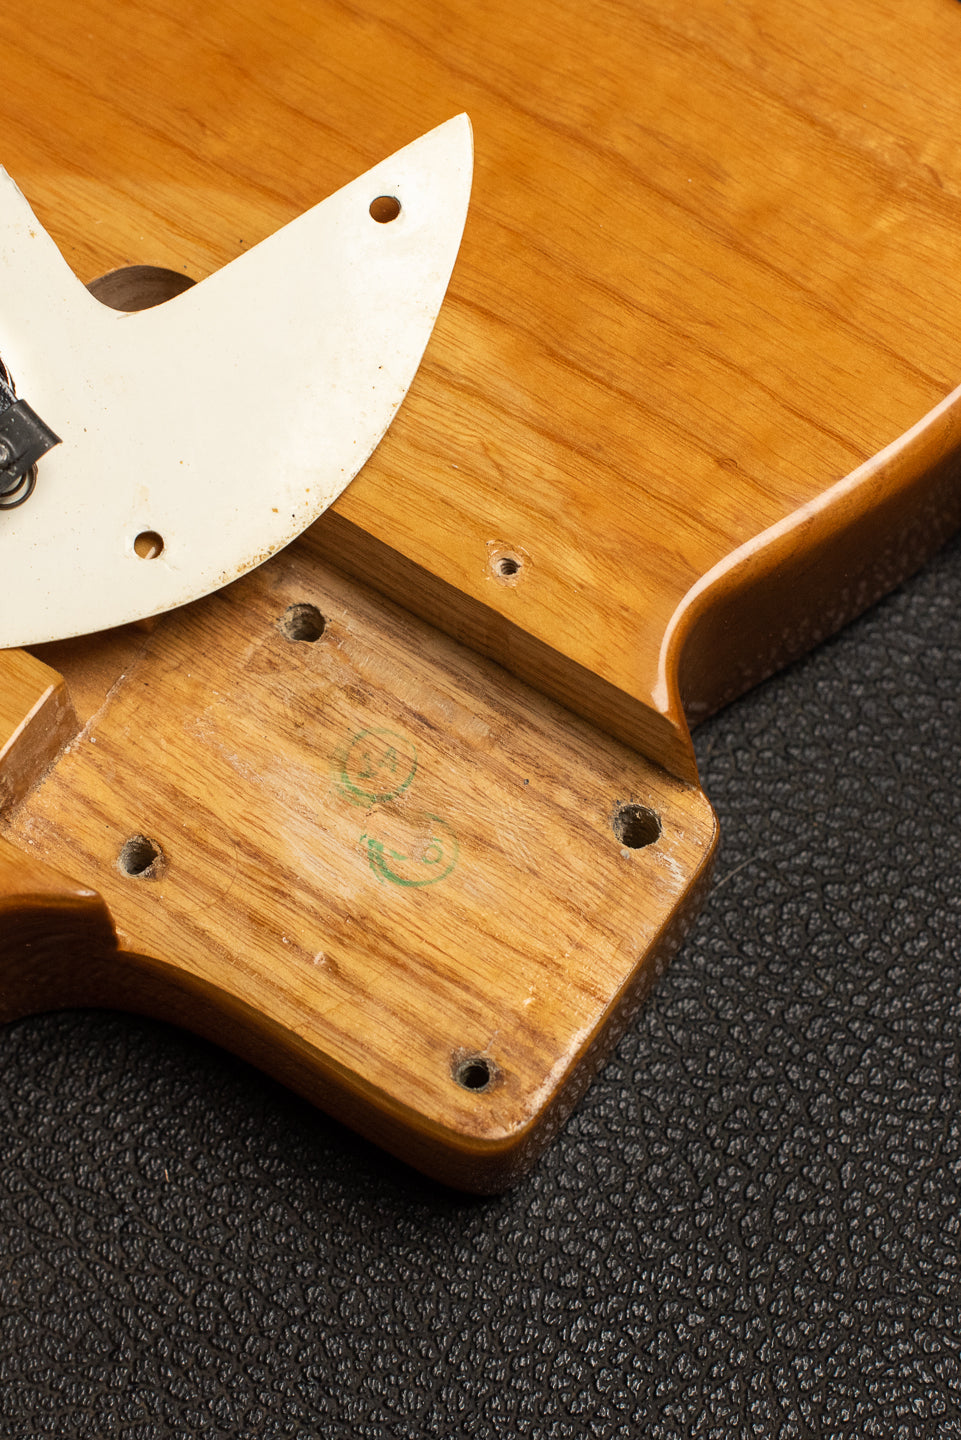 1969 Fender Telecaster Thinline neck pocket